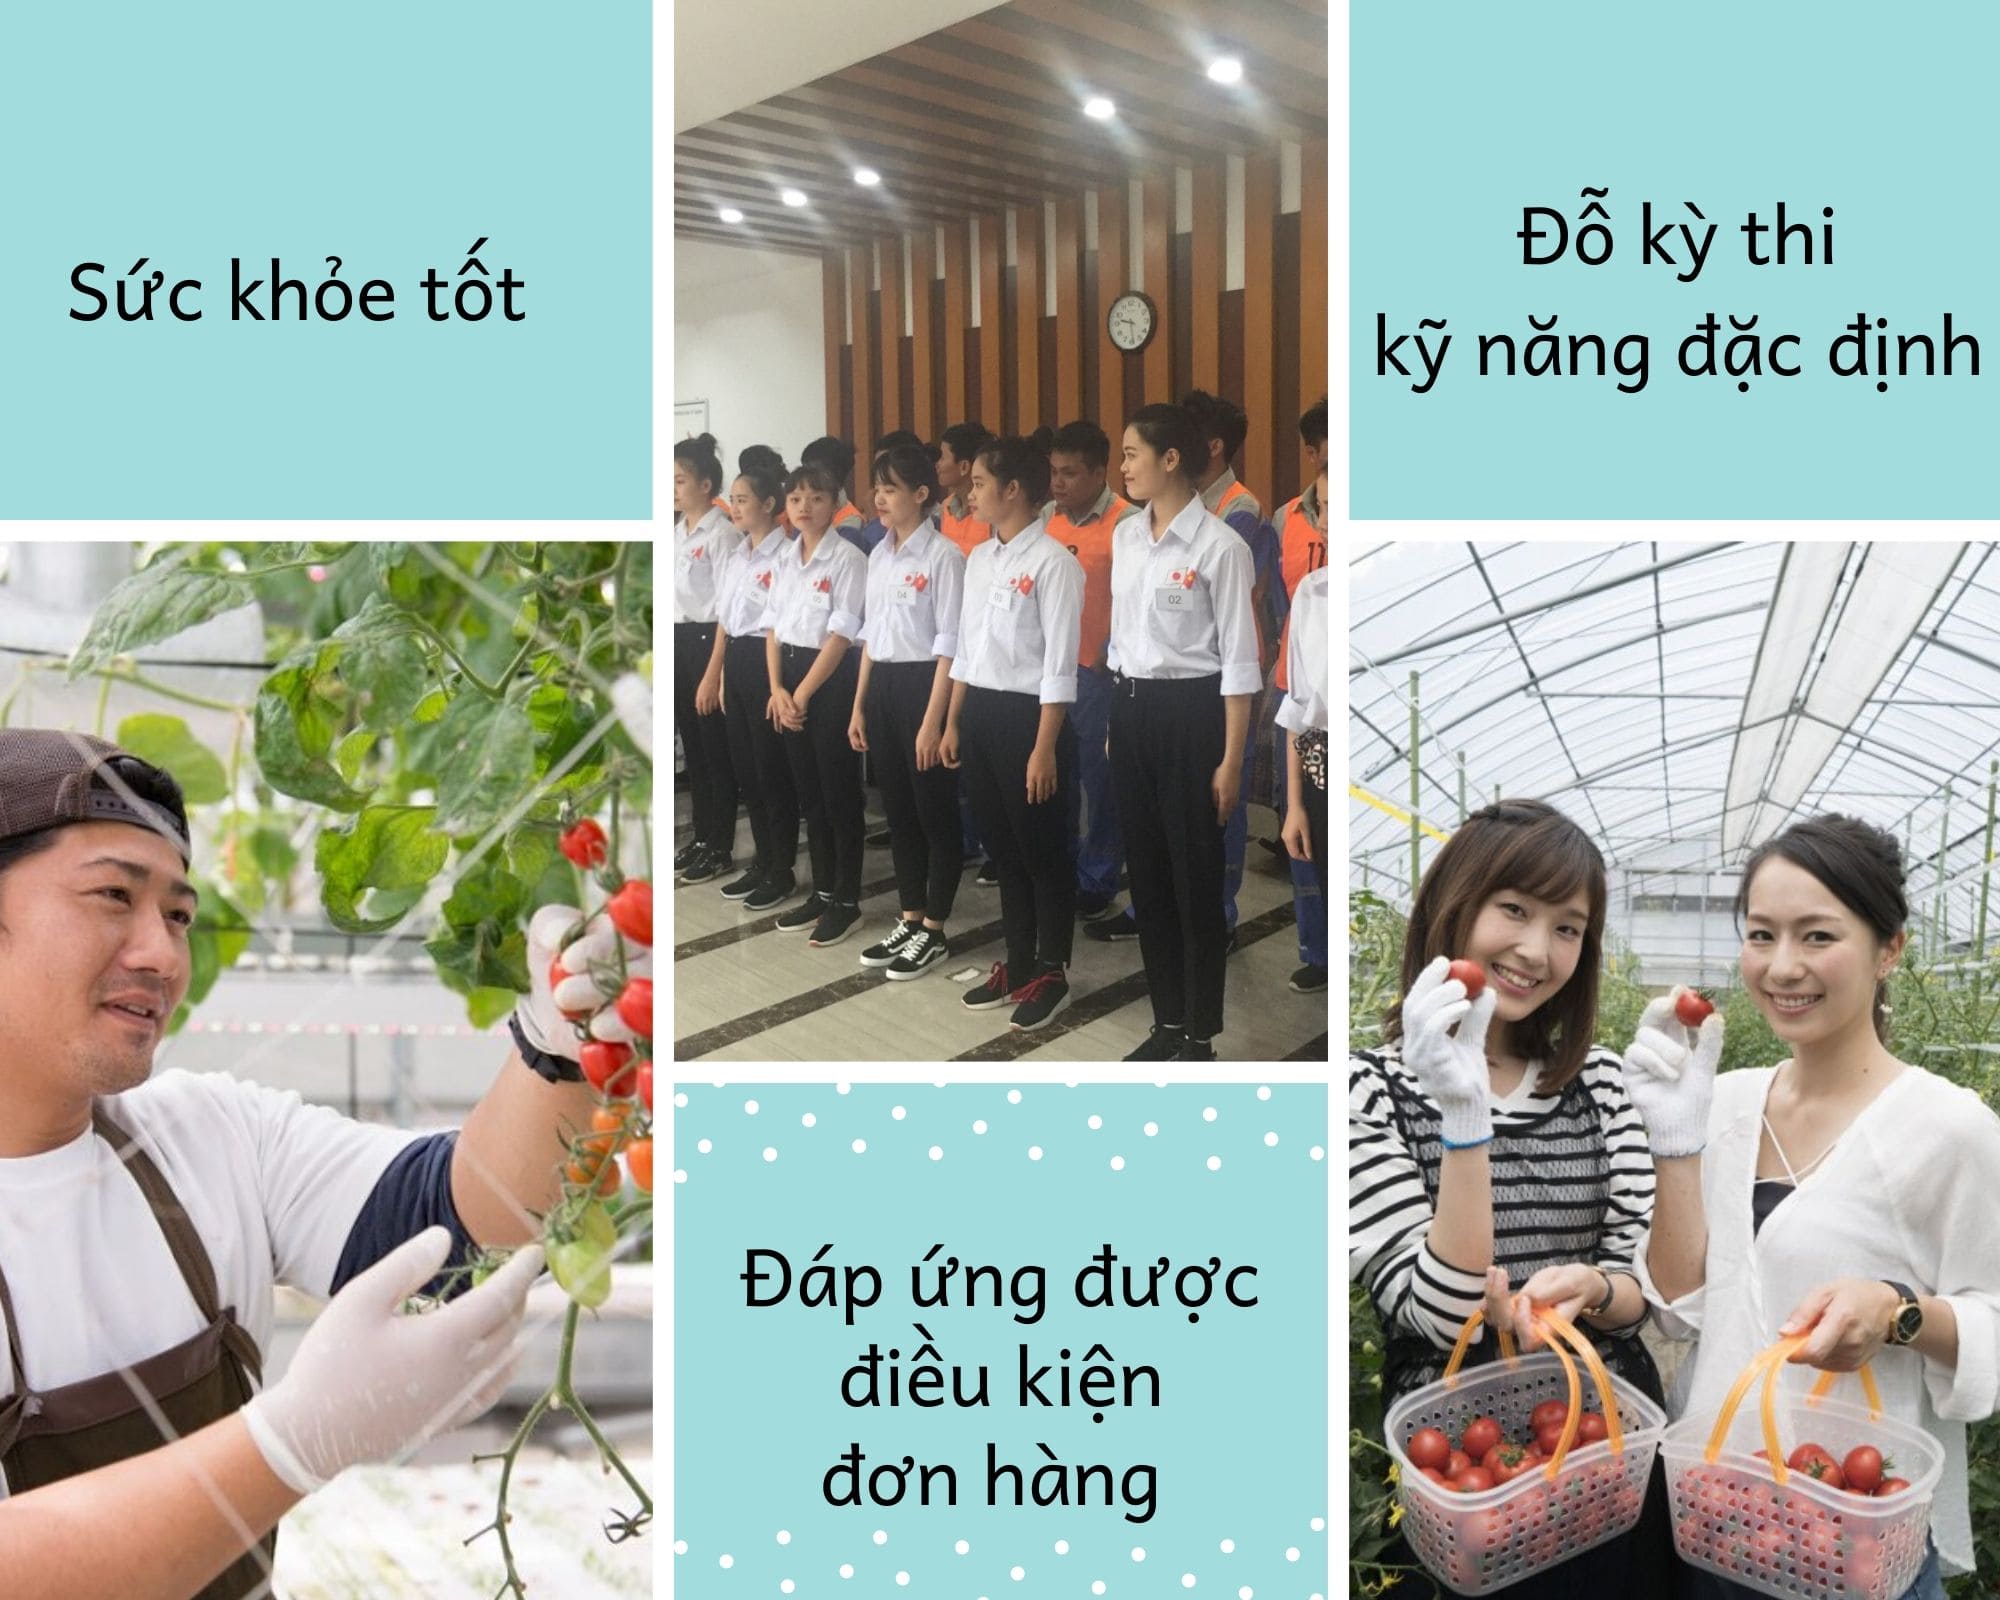  đơn hàng đặc định trồng và thu hoạch cà chua 